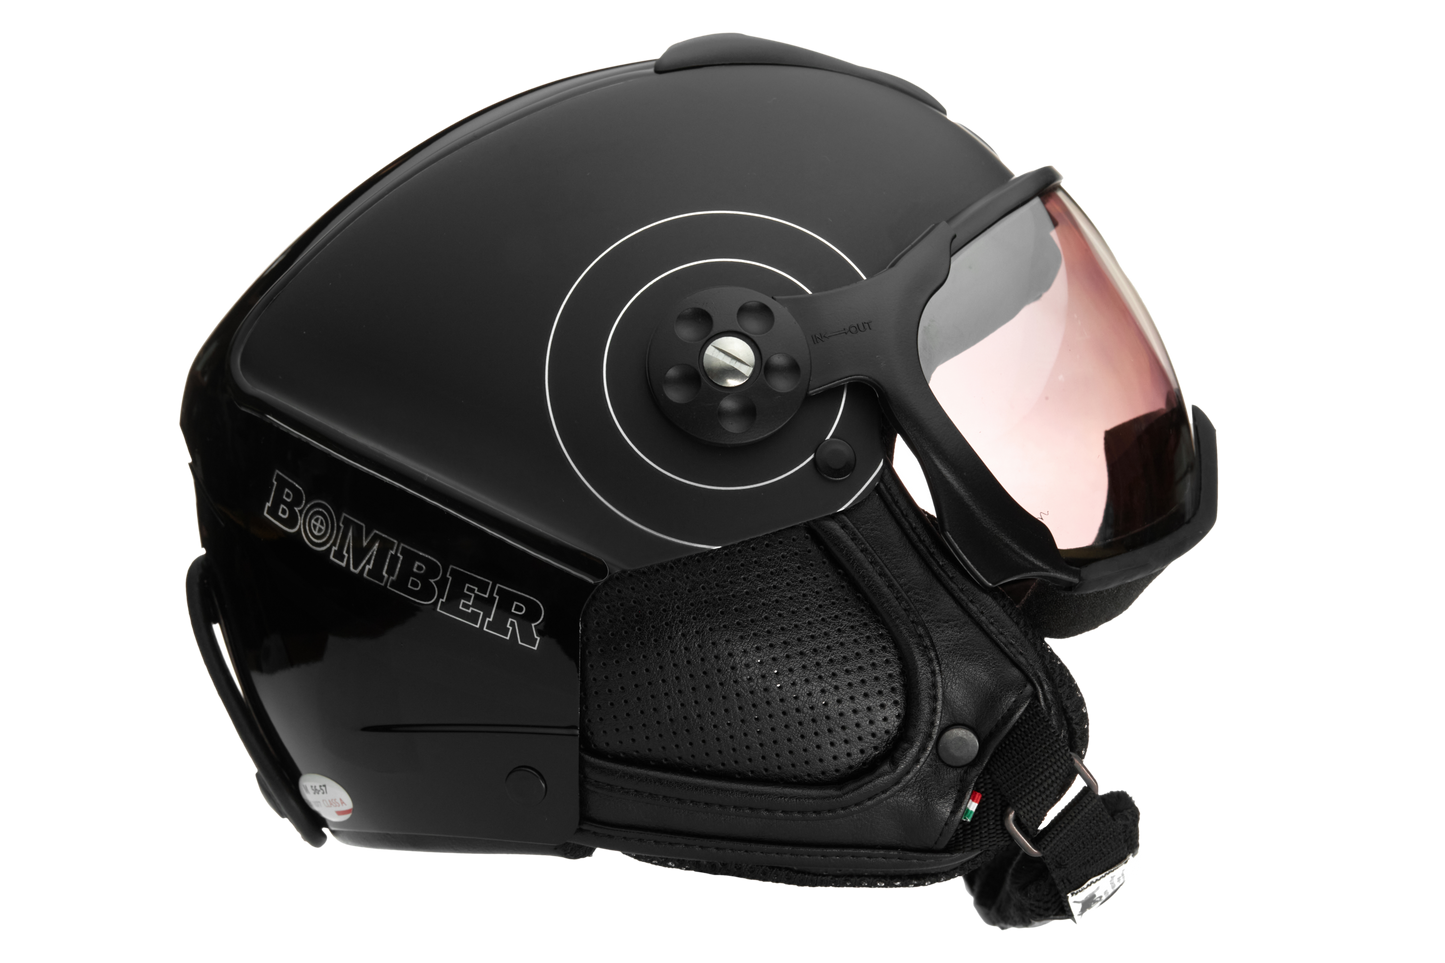 Stealth Black ABS Helmet